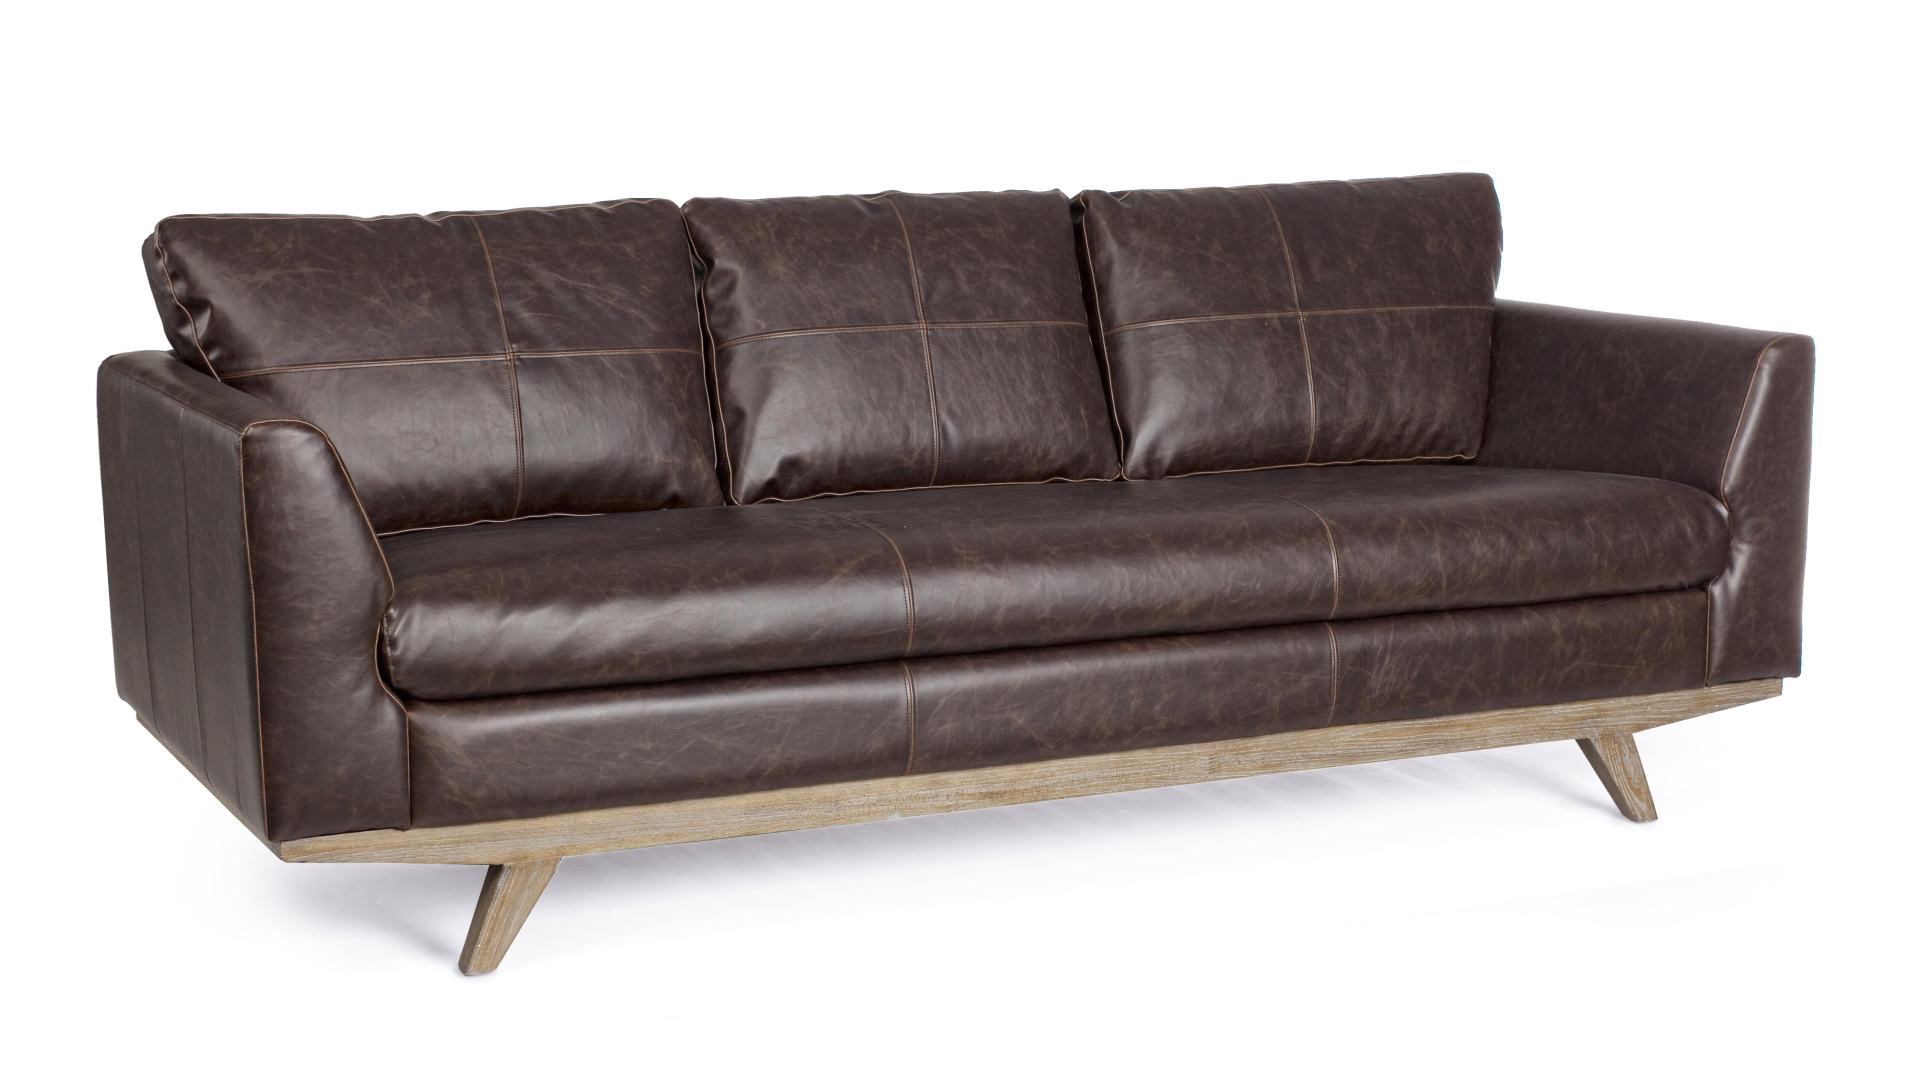 Das Sofa Johnston überzeugt mit seinem klassischen Design. Gefertigt wurde es aus Kunstleder, welches einen braunen Farbton besitzt. Das Gestell ist aus Eichenholz und hat eine natürliche Farbe. Das Sofa ist in der Ausführung als 3-Sitzer. Die Breite betr